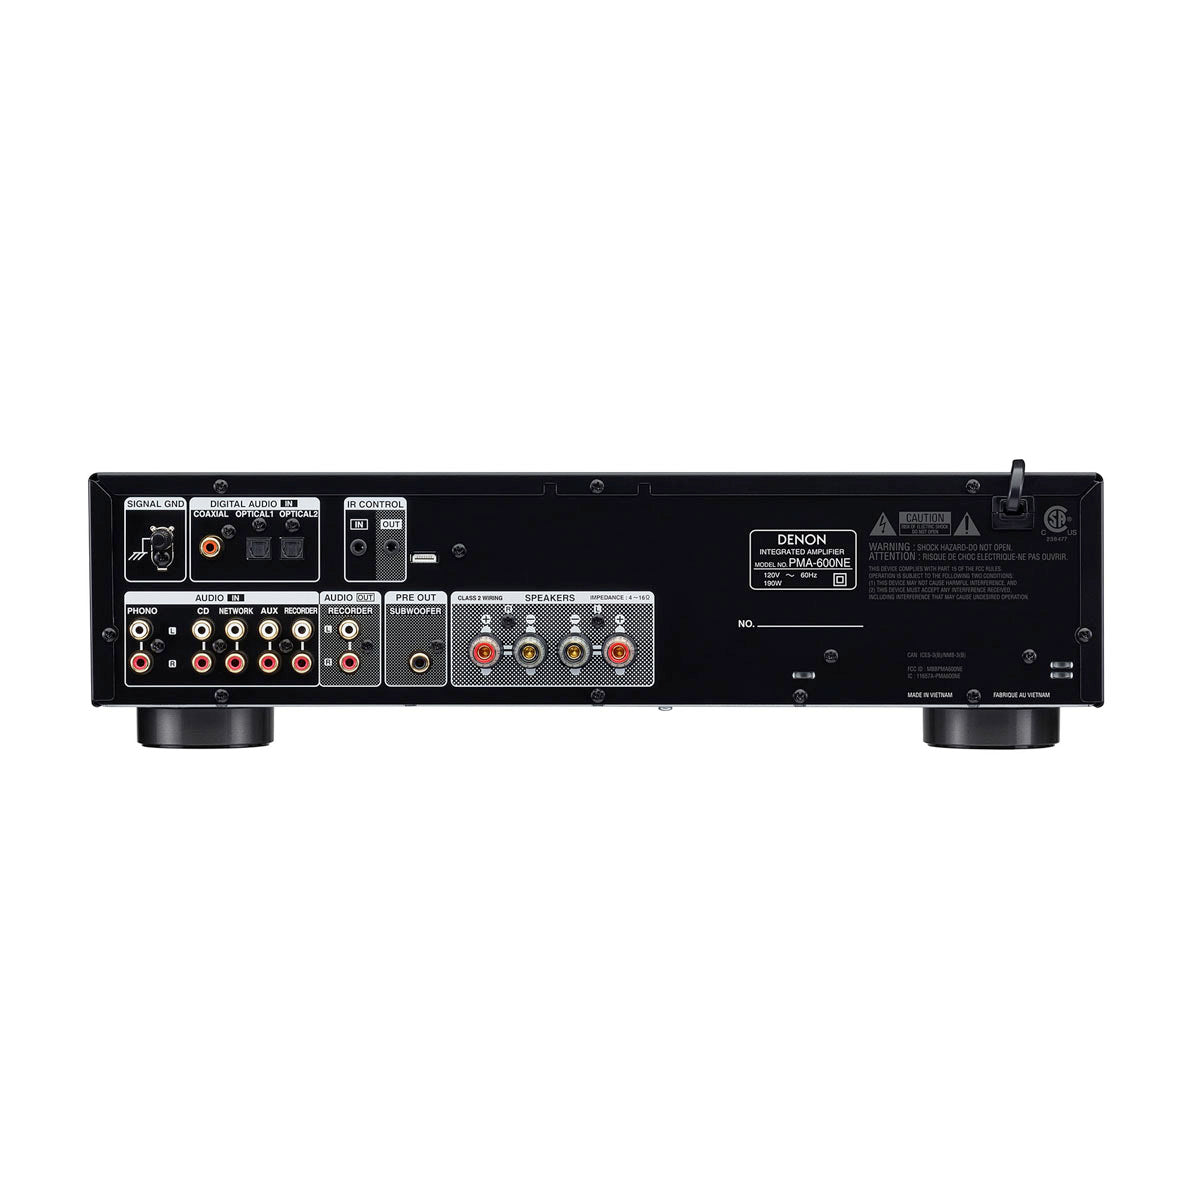 Denon PMA-600NE 45W x 2 Ch Stereo Amplifier - The Audio Experts